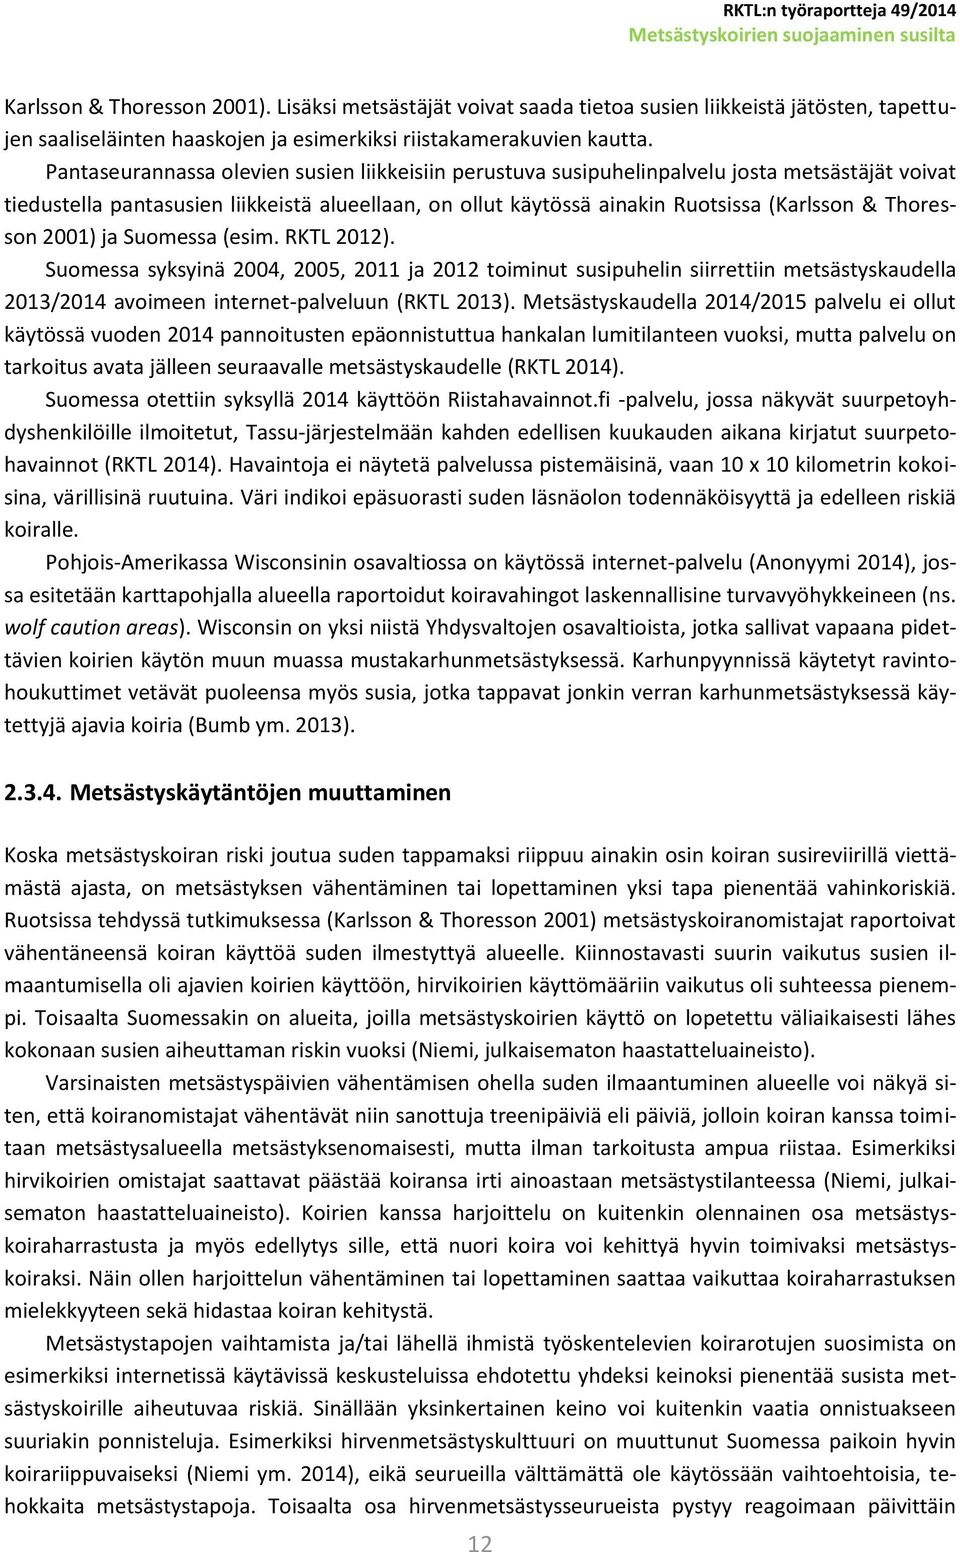 Thoresson 2001) ja Suomessa (esim. RKTL 2012). Suomessa syksyinä 2004, 2005, 2011 ja 2012 toiminut susipuhelin siirrettiin metsästyskaudella 2013/2014 avoimeen internet-palveluun (RKTL 2013).